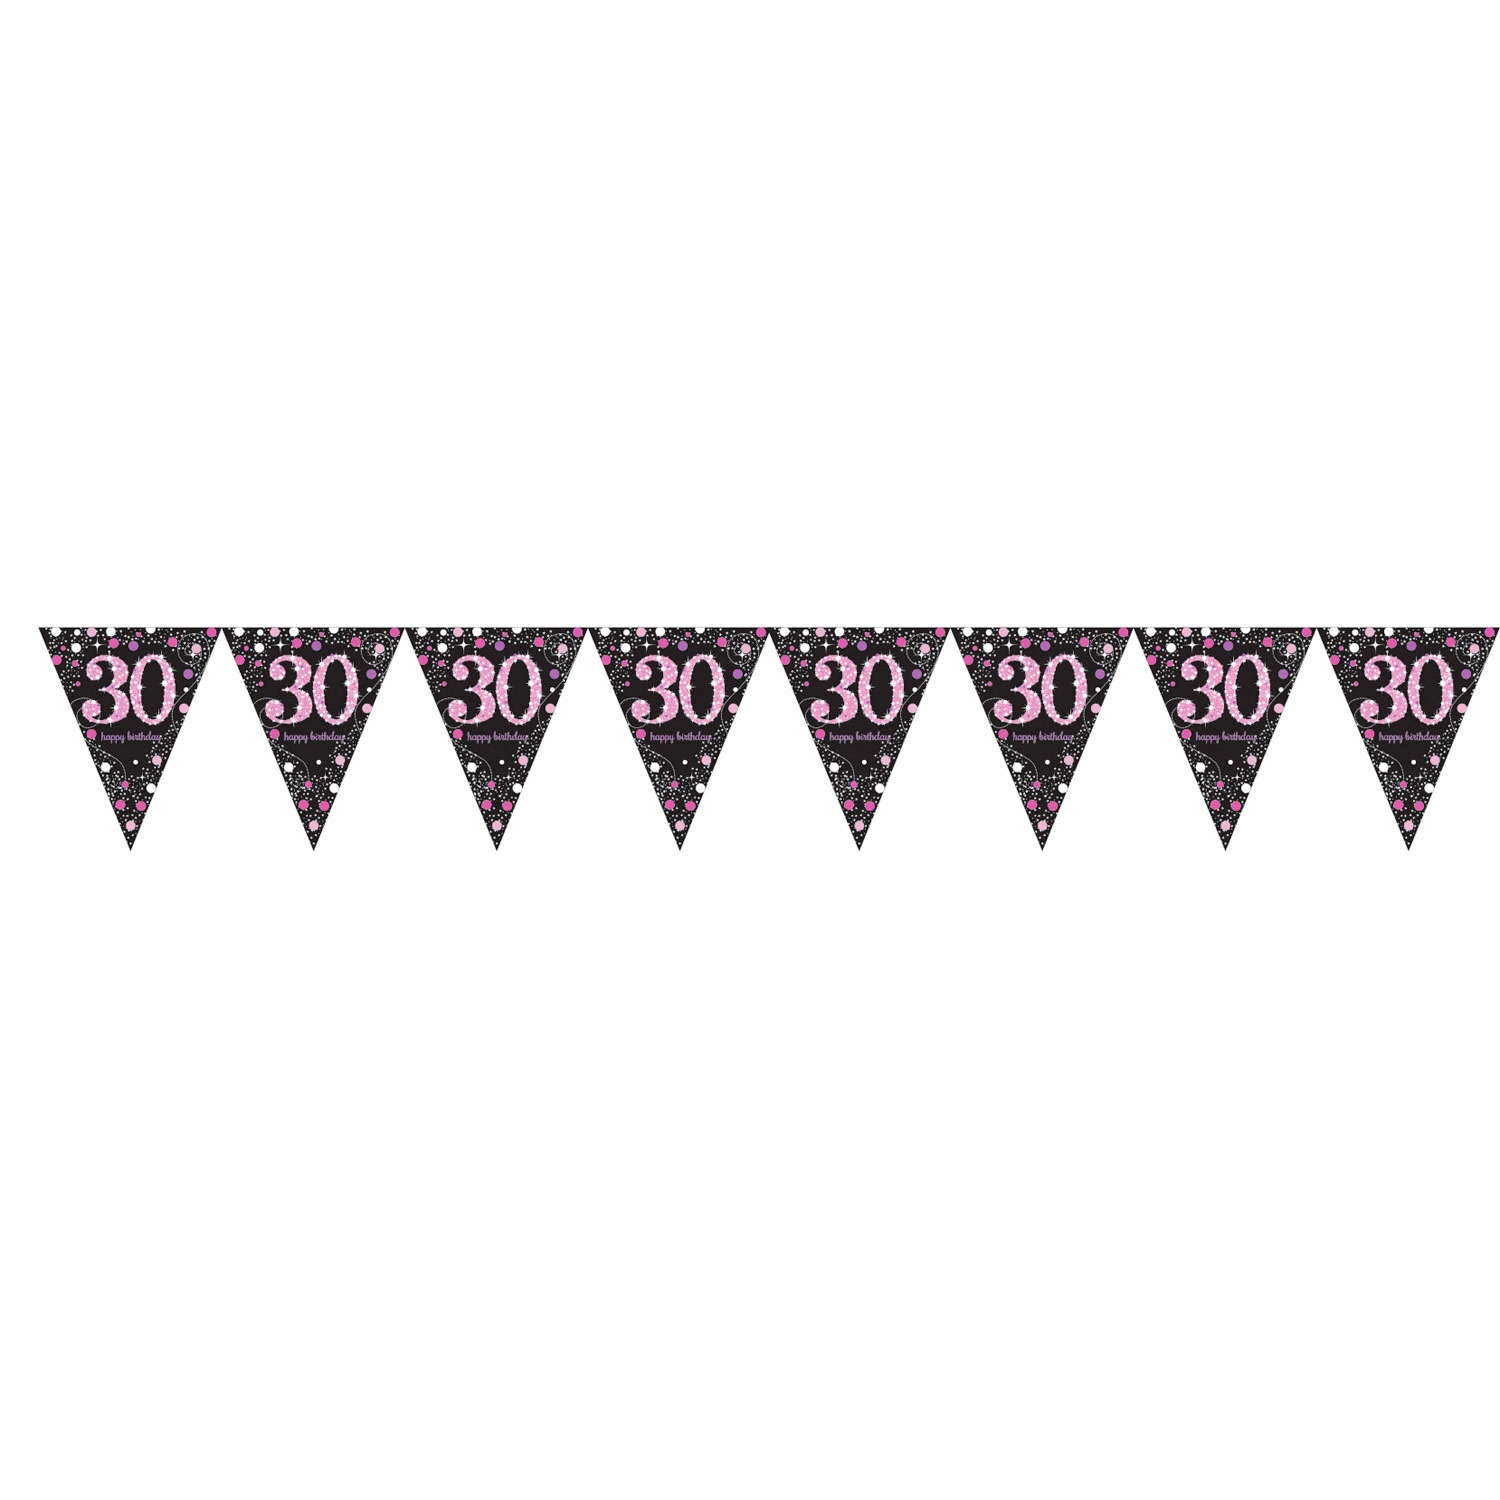 Wimpelkette Wimpelgirlande zum 30. Geburtstag pink schwarz